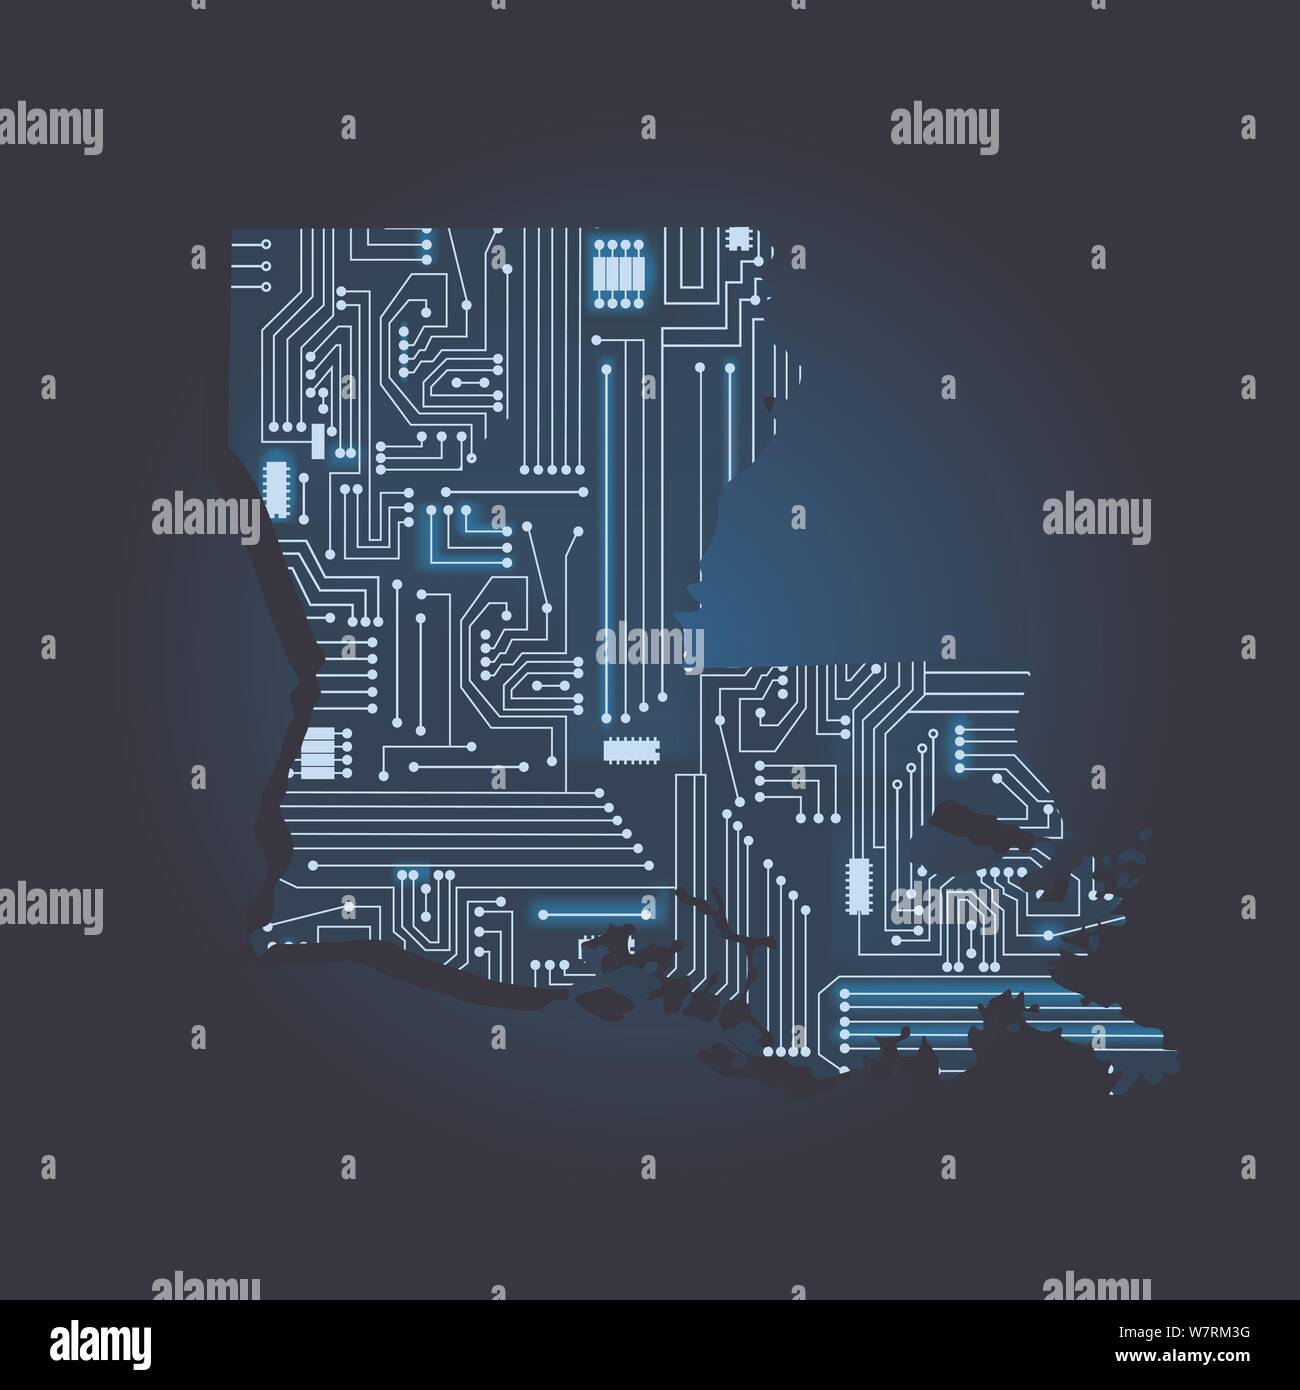 Carte de contour de la Louisiane avec un circuit électronique. États-unis d'état. Fond bleu. Illustration de Vecteur